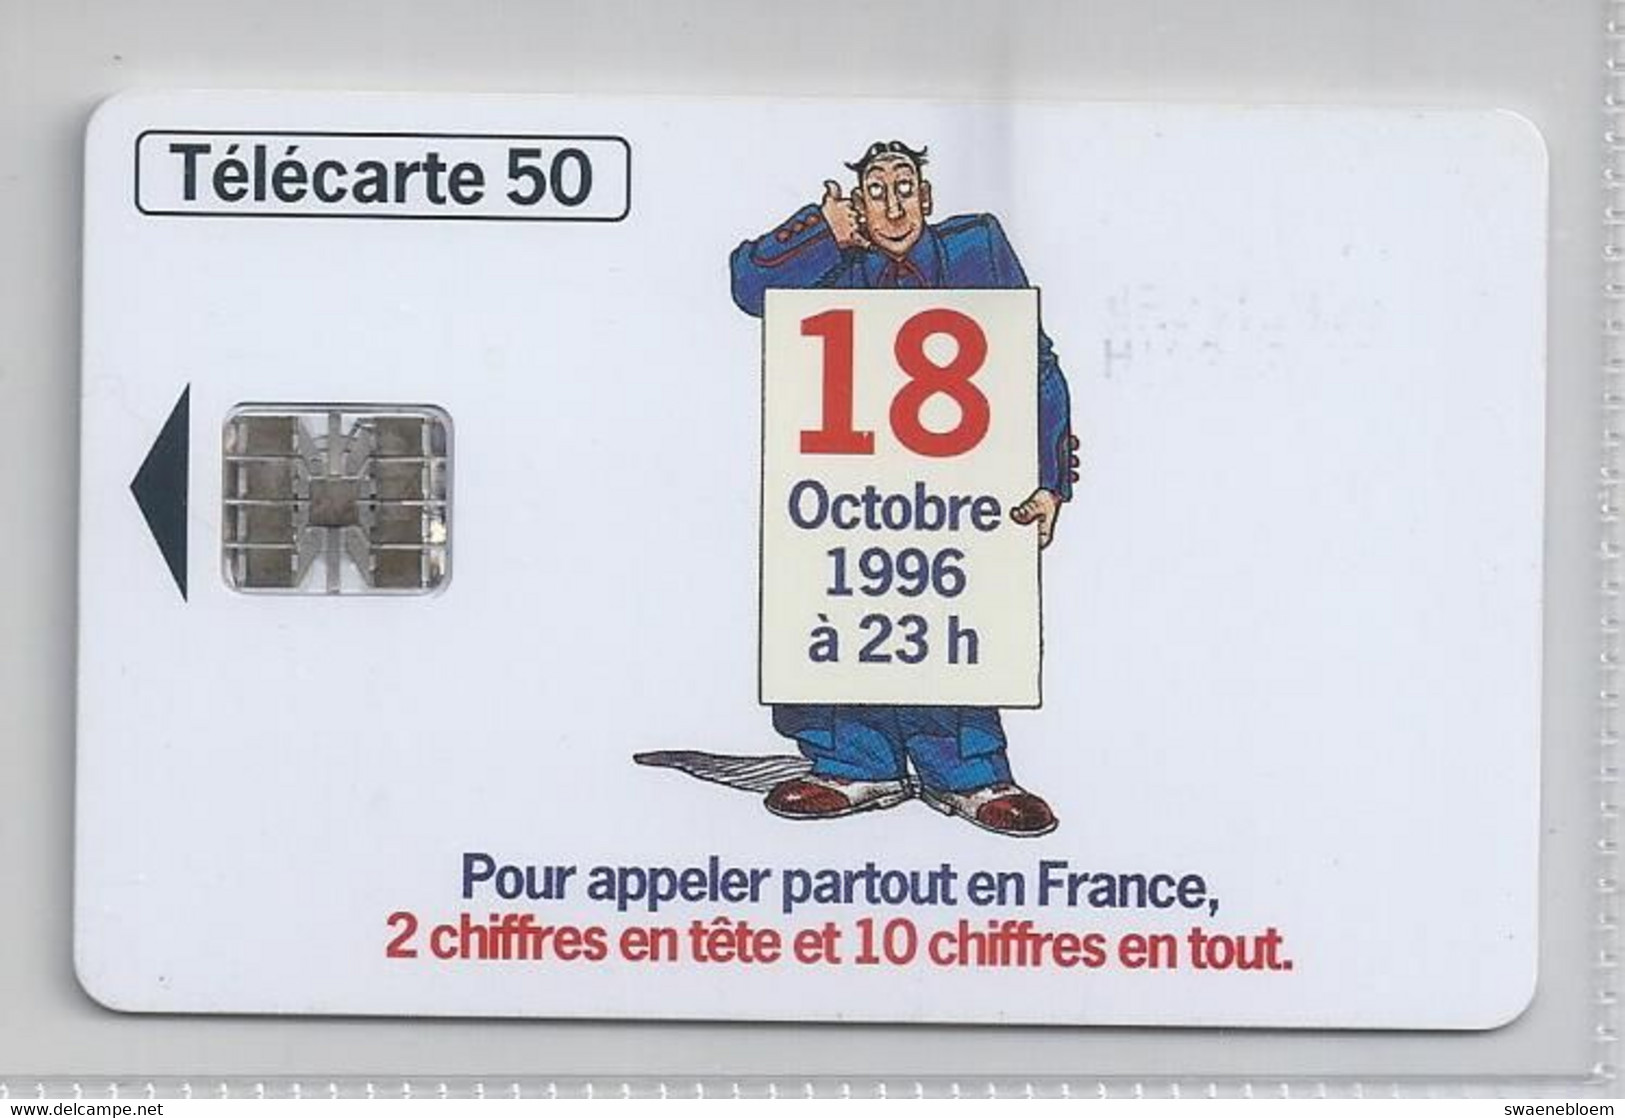 FR.- France Telecom. Télécarte. 18 OCTOBRE 1996 A 23h. 2 CHIFFRES EN TETE,ET 10 CHIFFRES EN TOUT. POUR APPELER PARTOUT - Puzzles